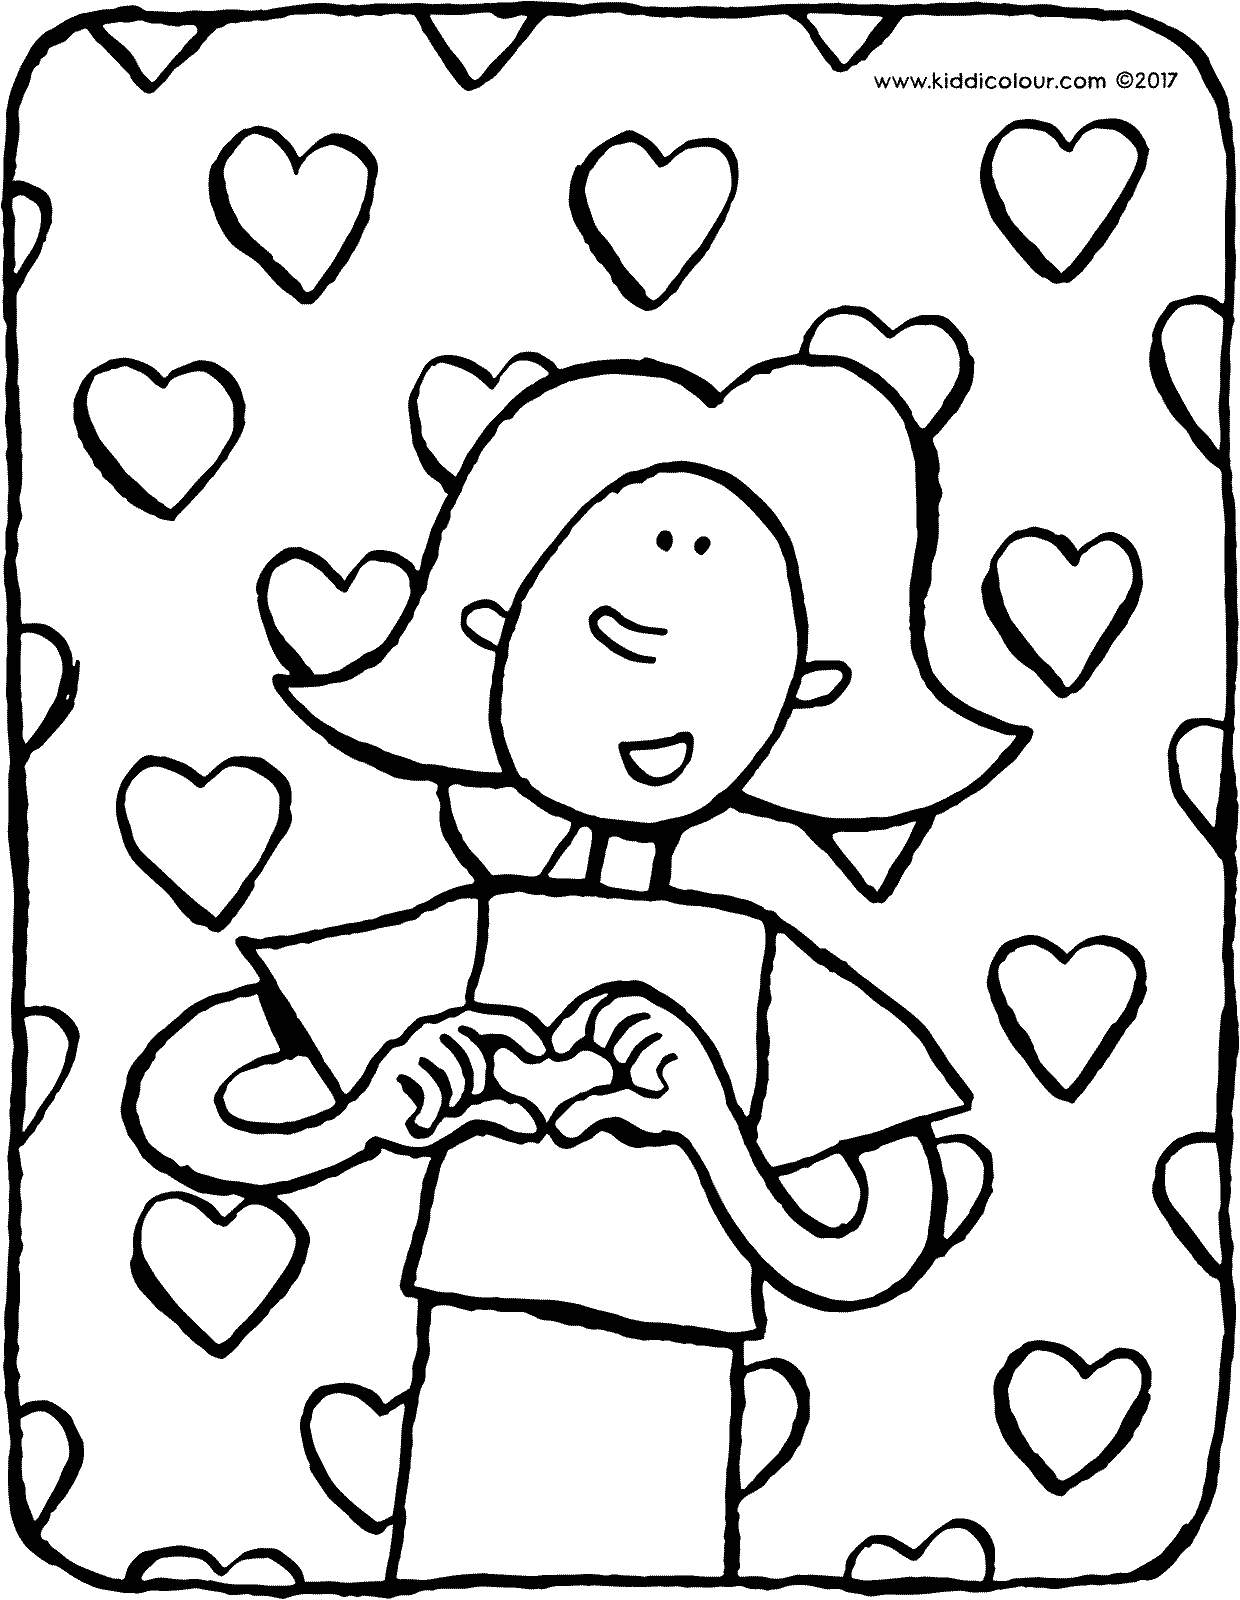 Emma met hartjes kleurplaat kleurprent tekening 01V